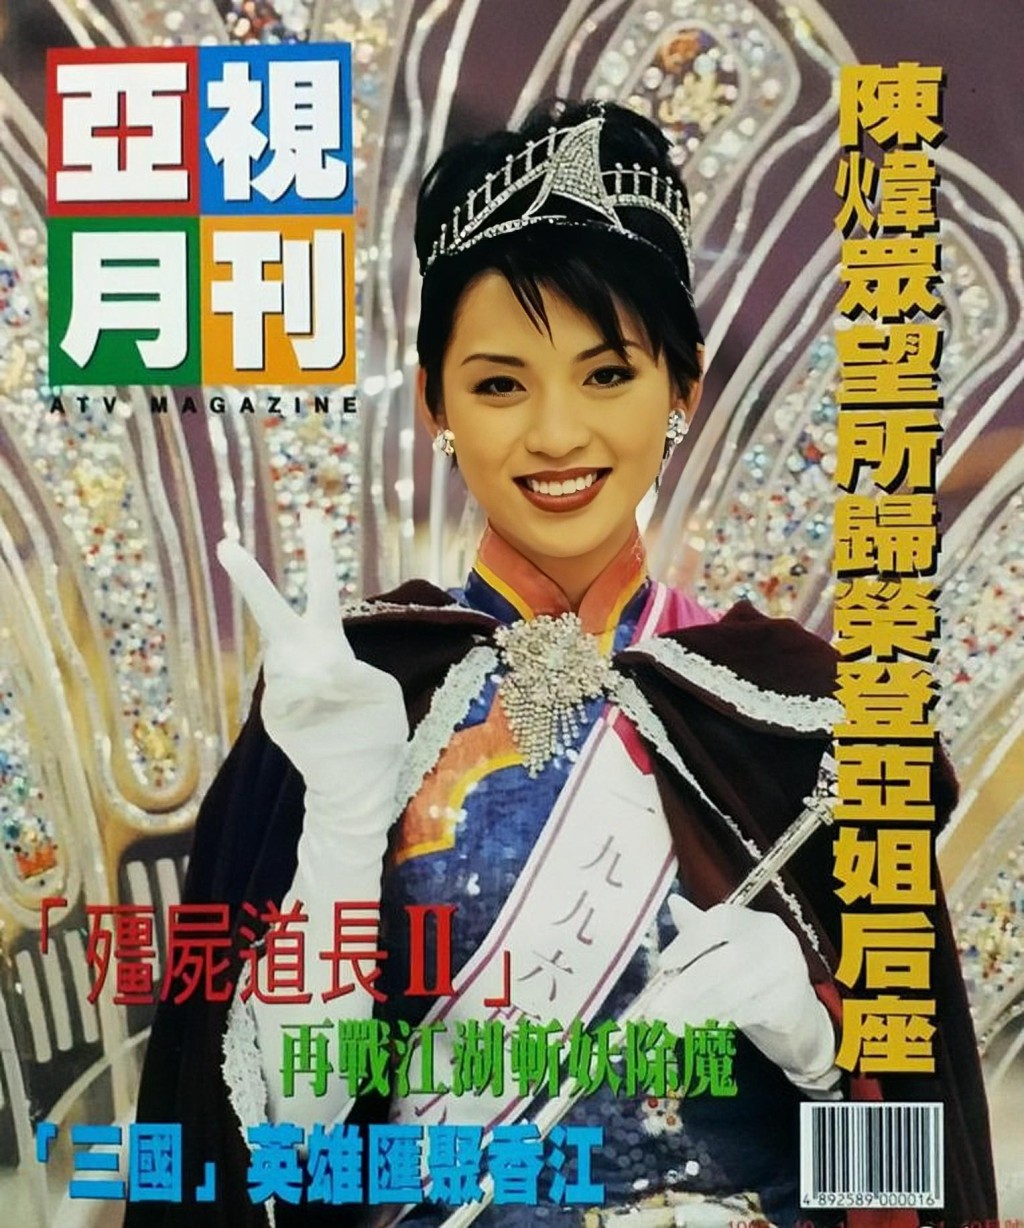 去年有網民於facebook專頁「90年代回憶」分享一張亞視月刊的封面照。